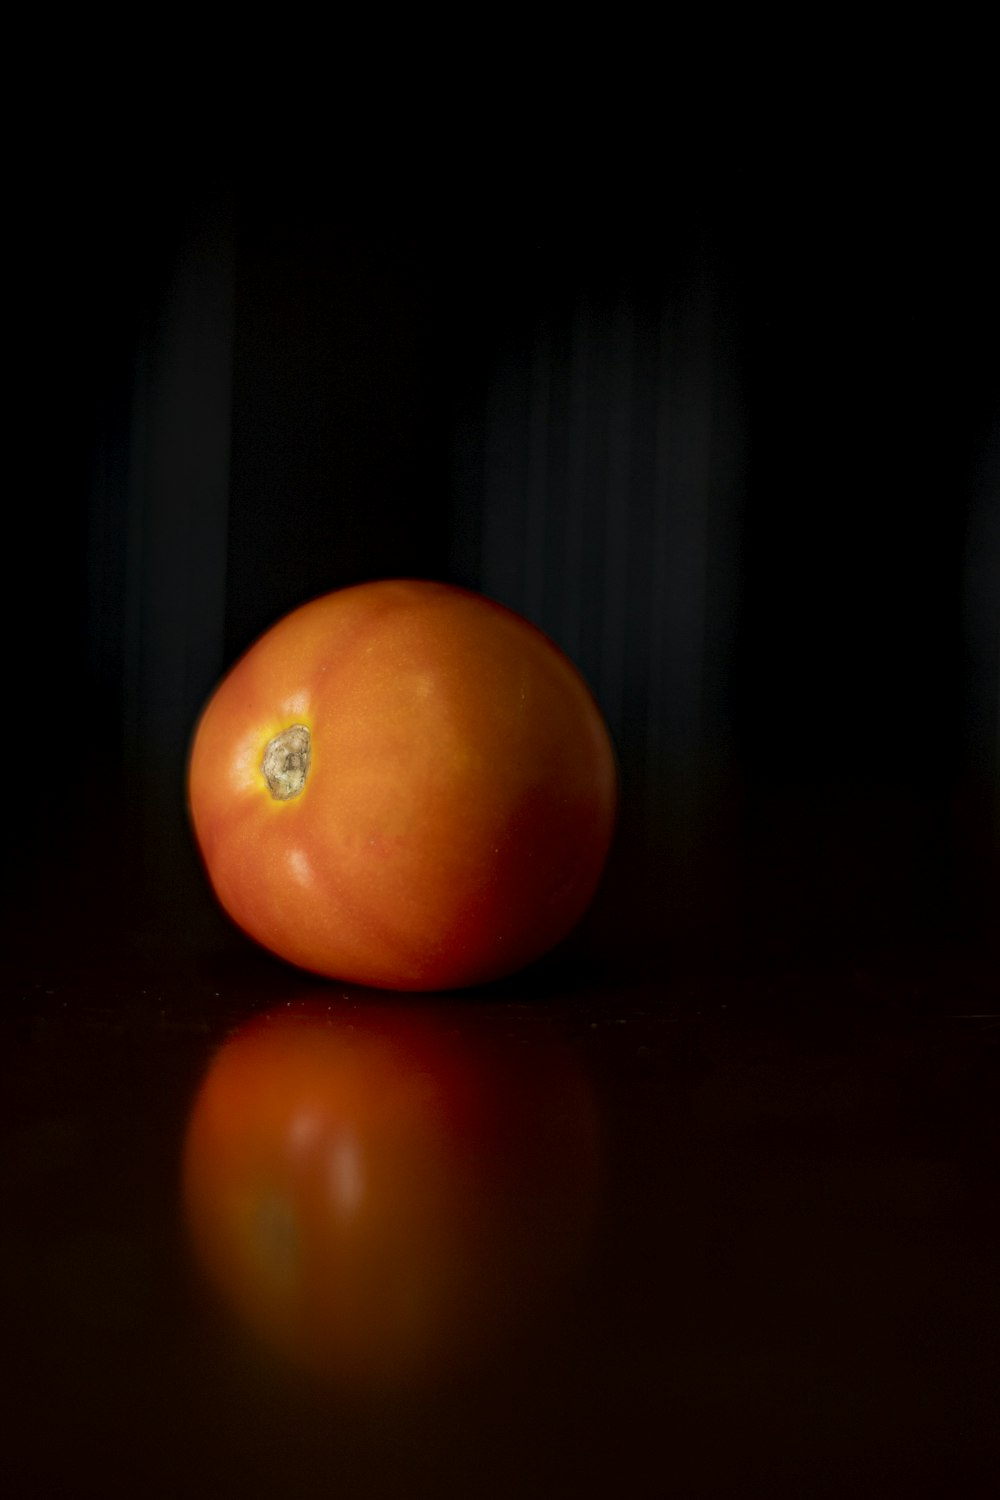 orange tomato on brown wooden table